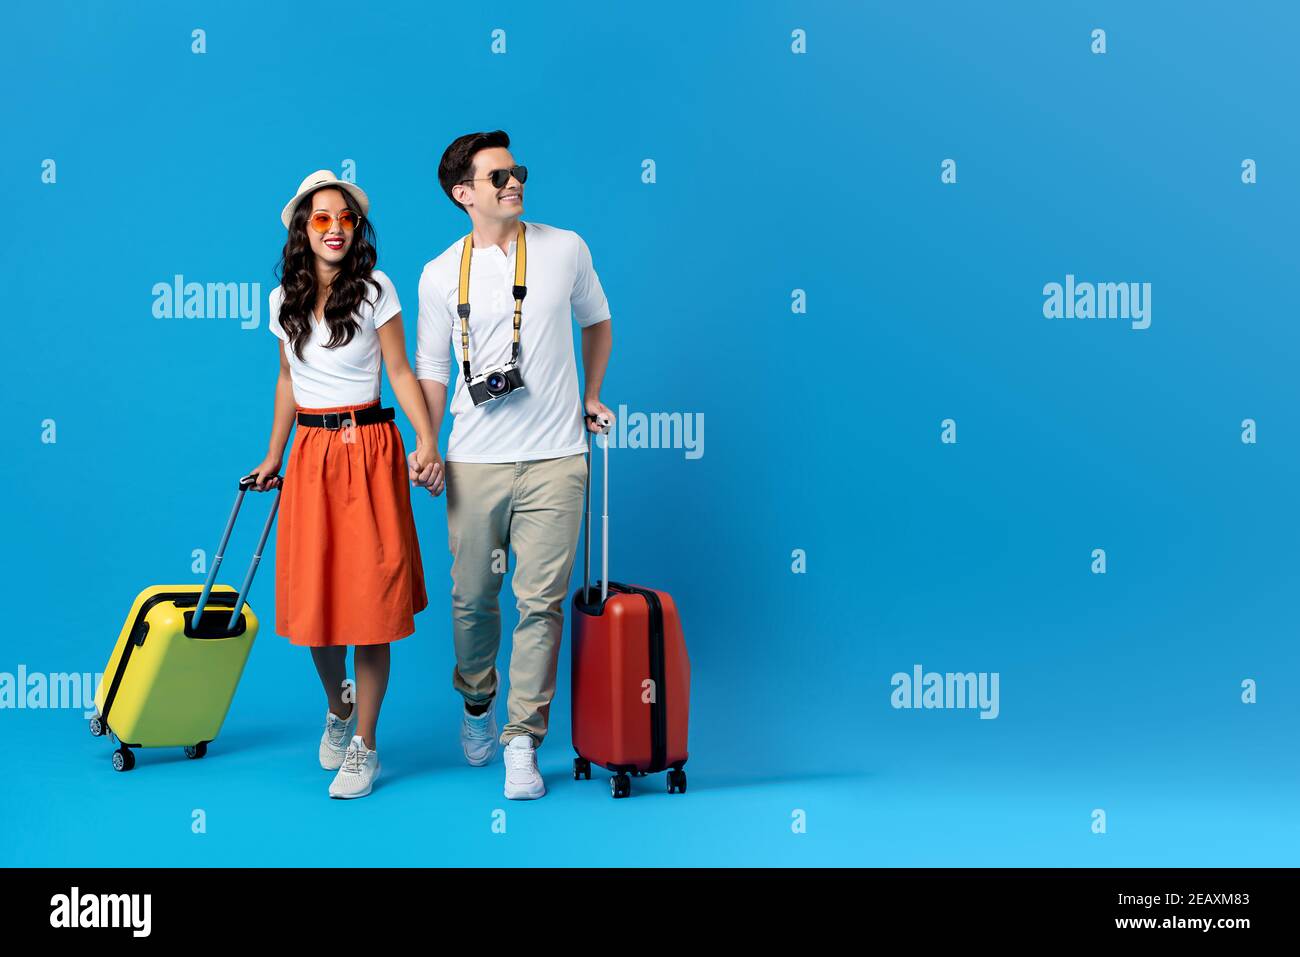 Felice giovane coppia essendo pronta ad andare per le loro vacanze con valigie colorate isolate su sfondo blu con spazio per la copia Foto Stock